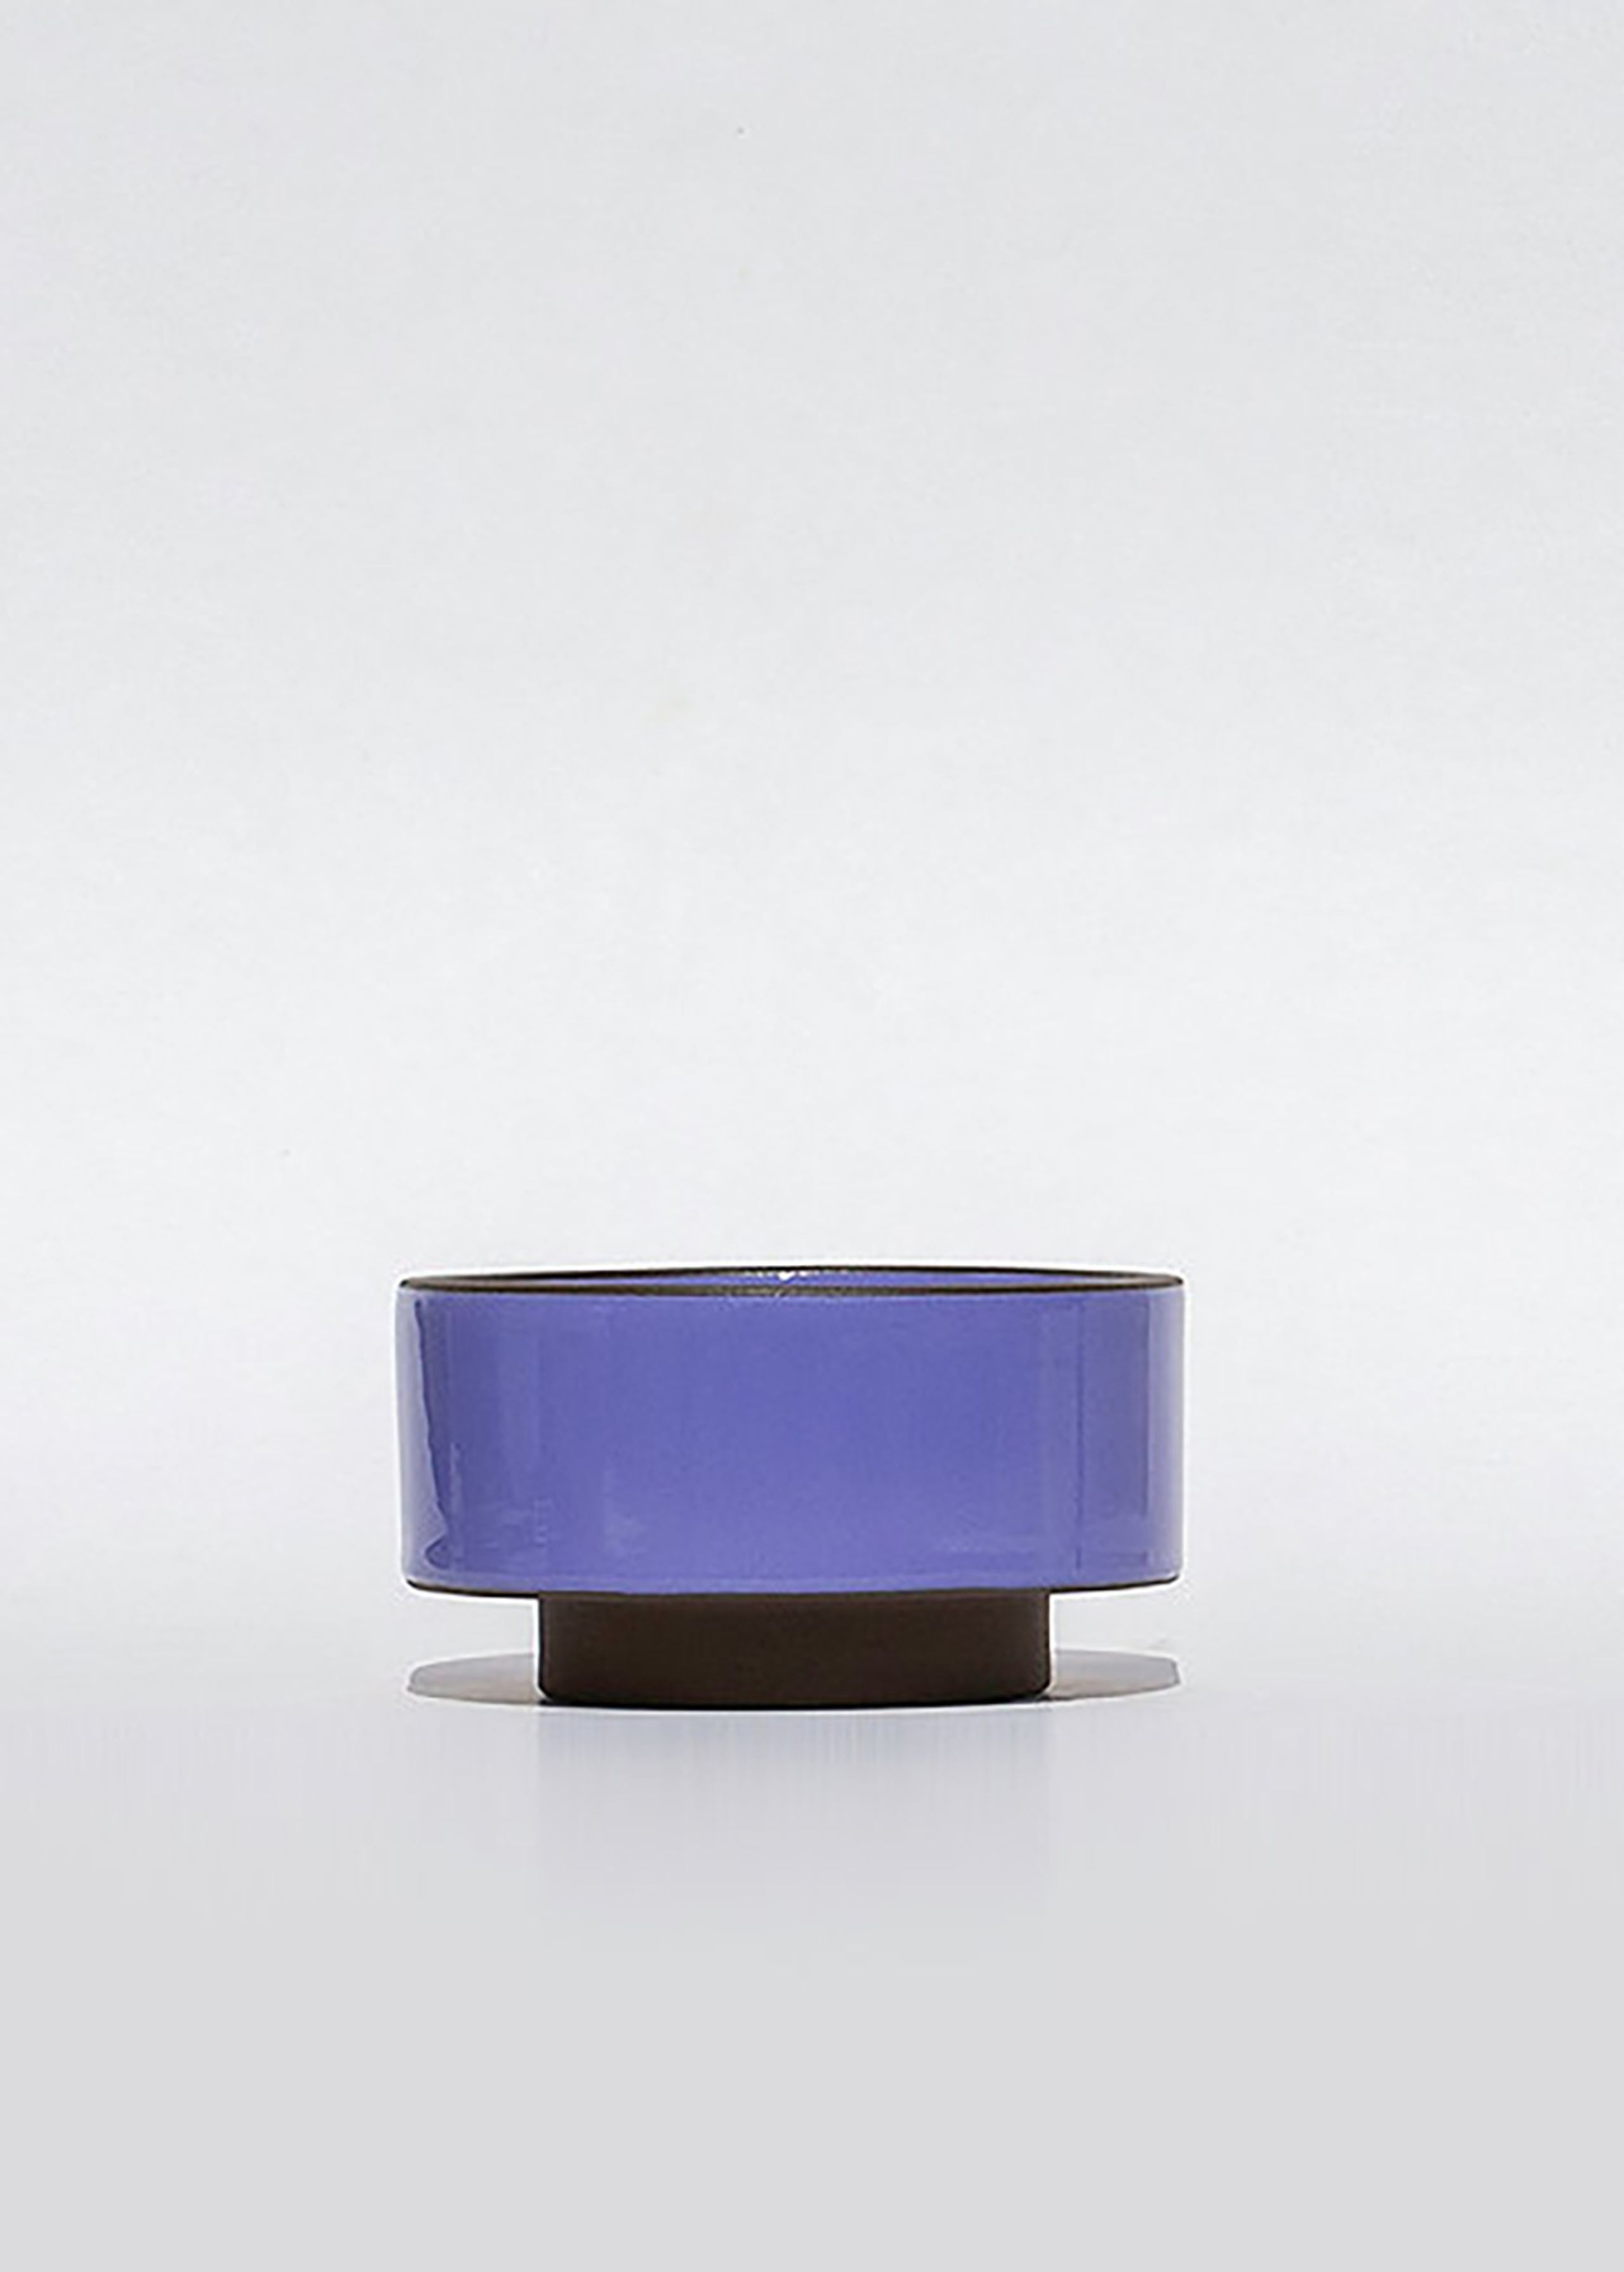 Adama Studio - Cópia - Bau Bowl - Small - Lavender